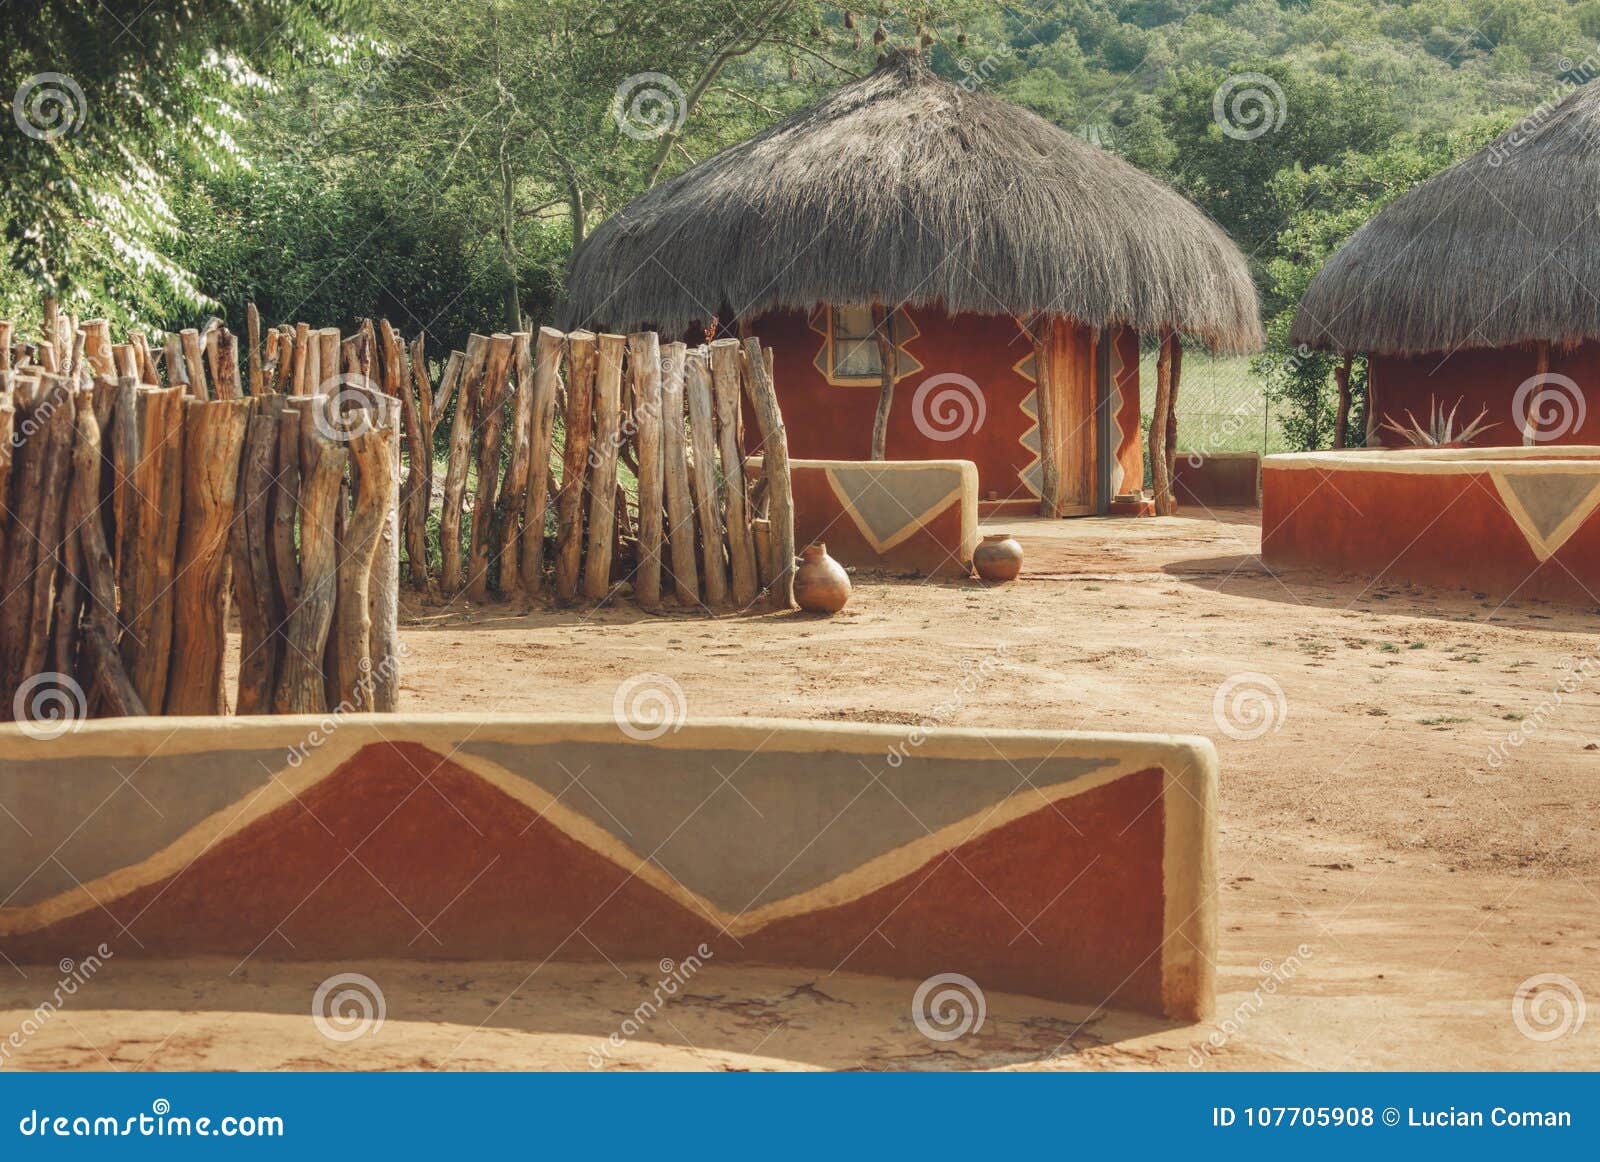 传统非洲的小屋 库存图片. 图片 包括有 赤道, 房子, 棚子, 经济, 传统, 乡下, 茅草屋顶, 闹事 - 2101991